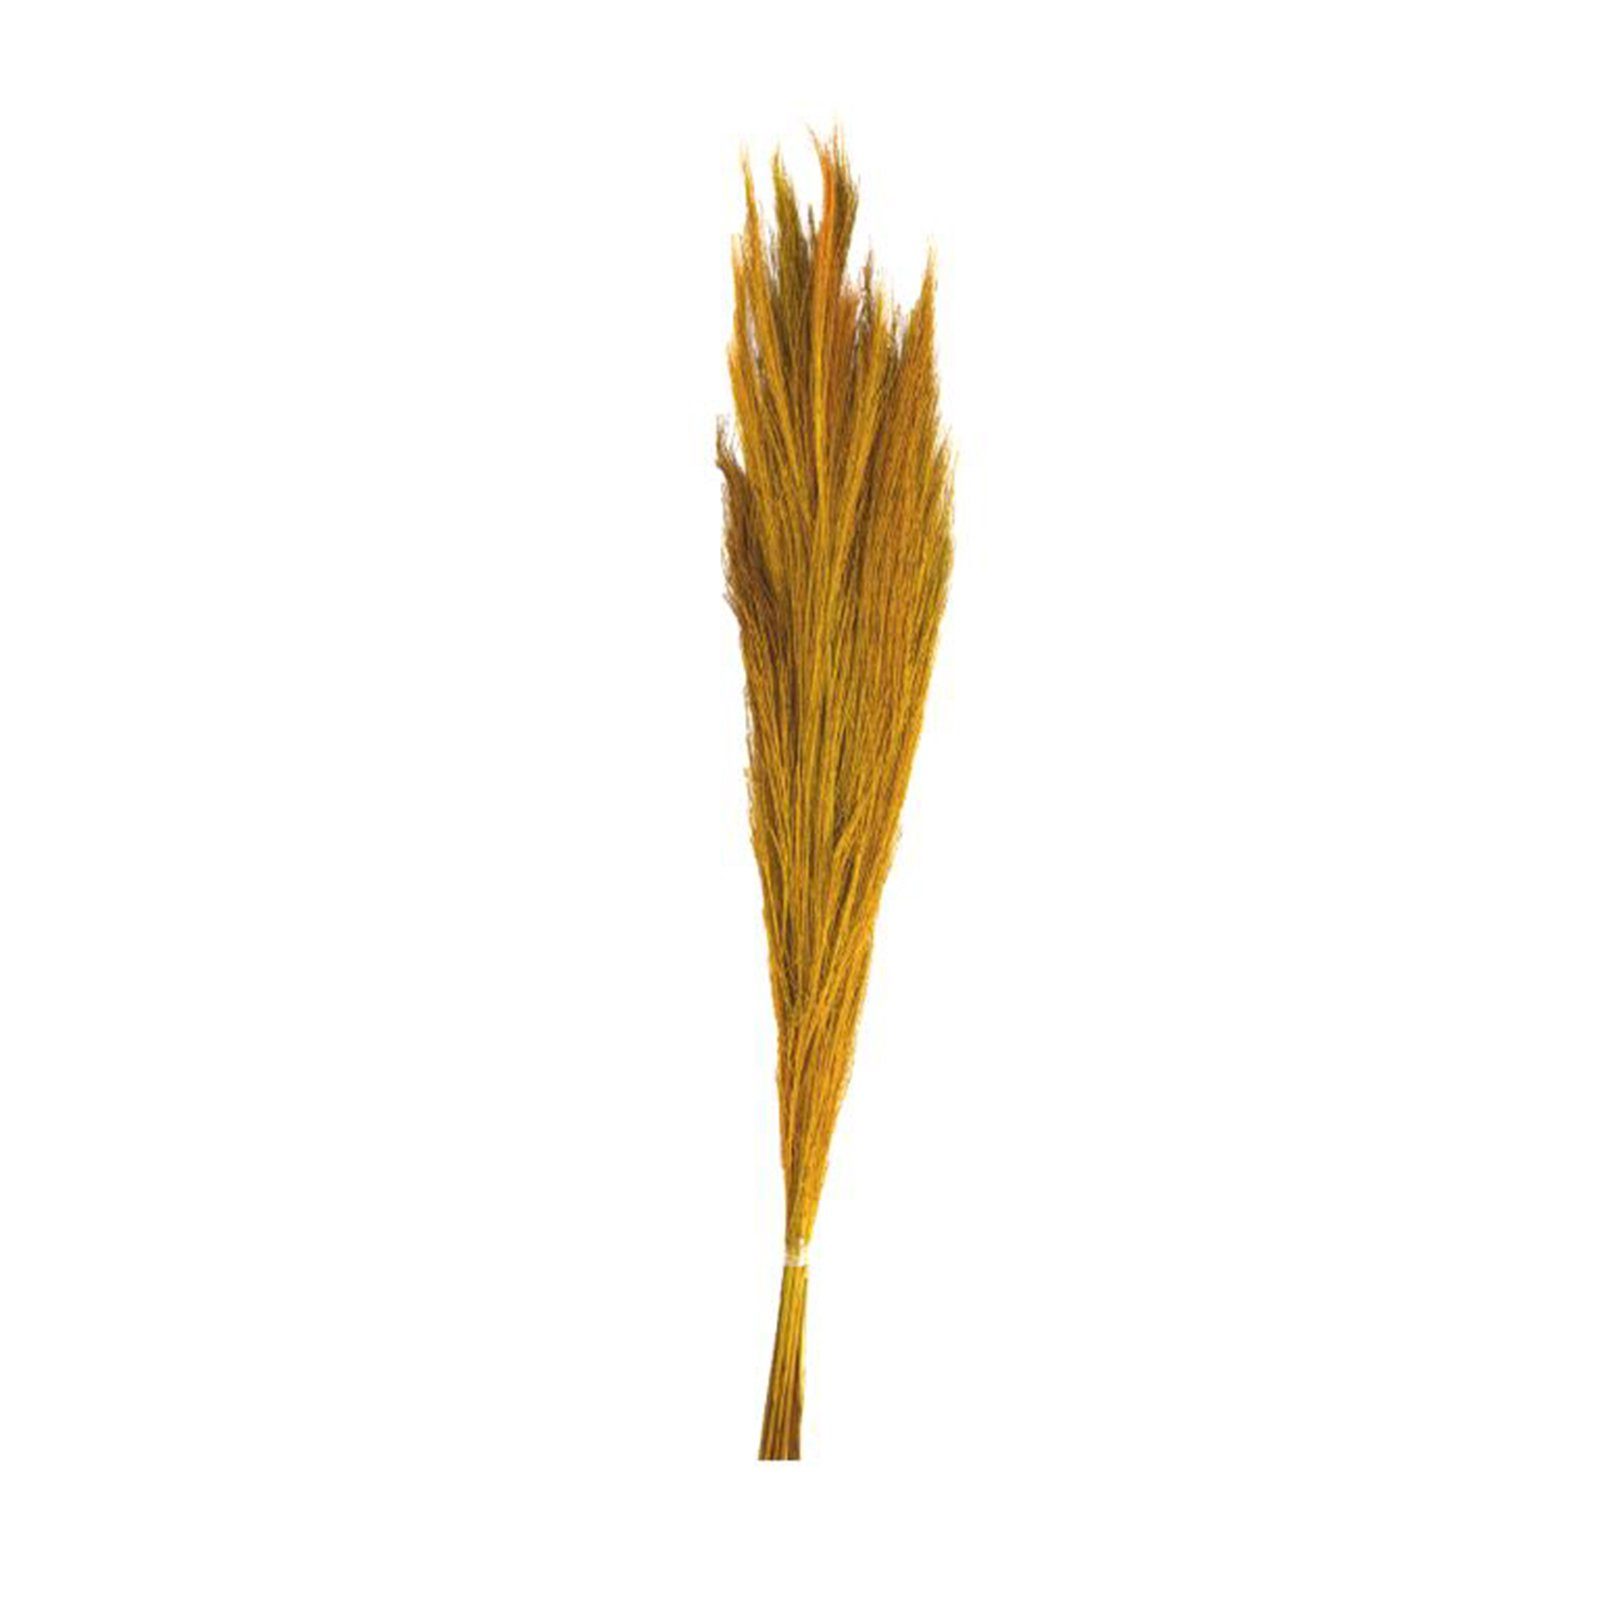 - DIJK 90-105 - - grass - Broom 100g, Ginstergras Thysanolaena gelb cm Trockenblume